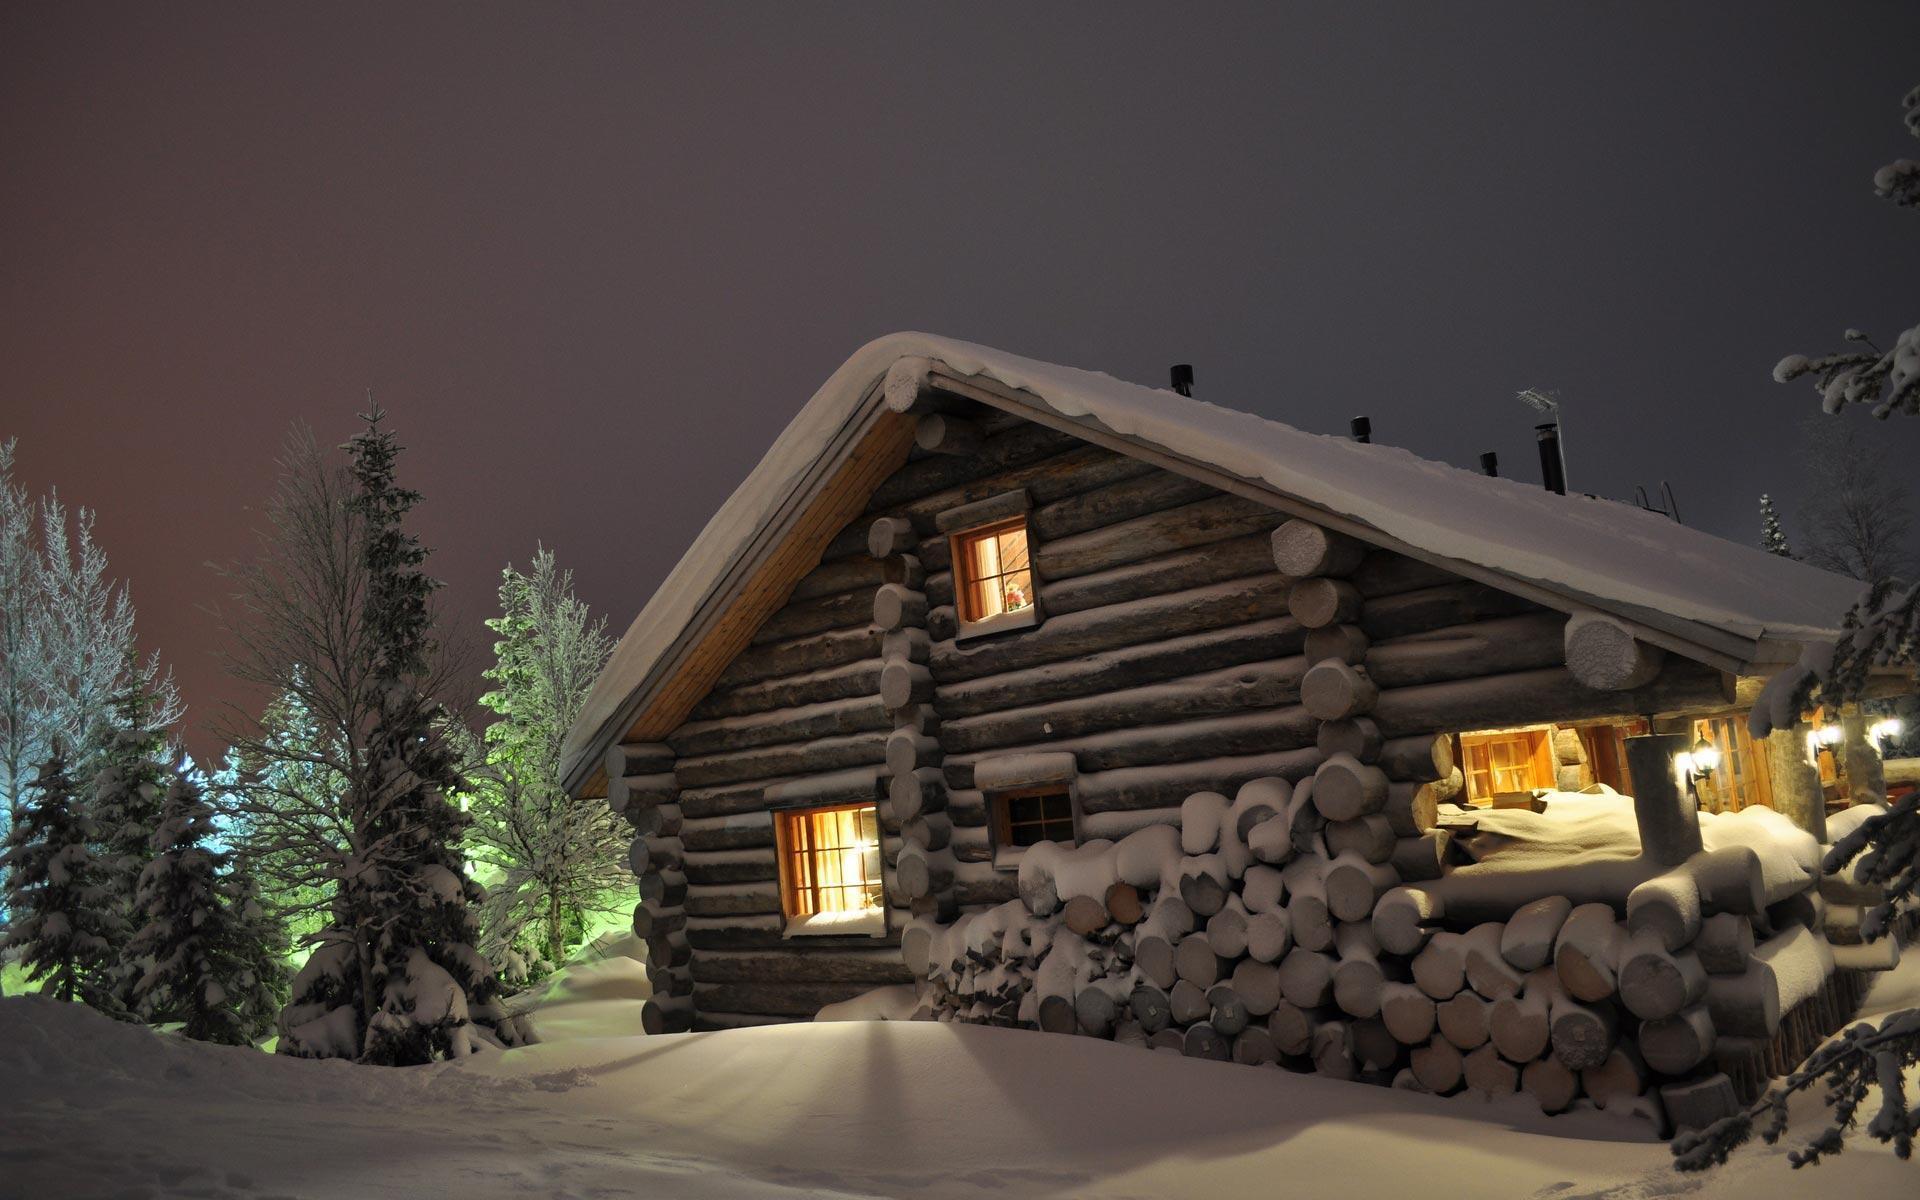 Log Cabin Winter Scenes Wallpaper at